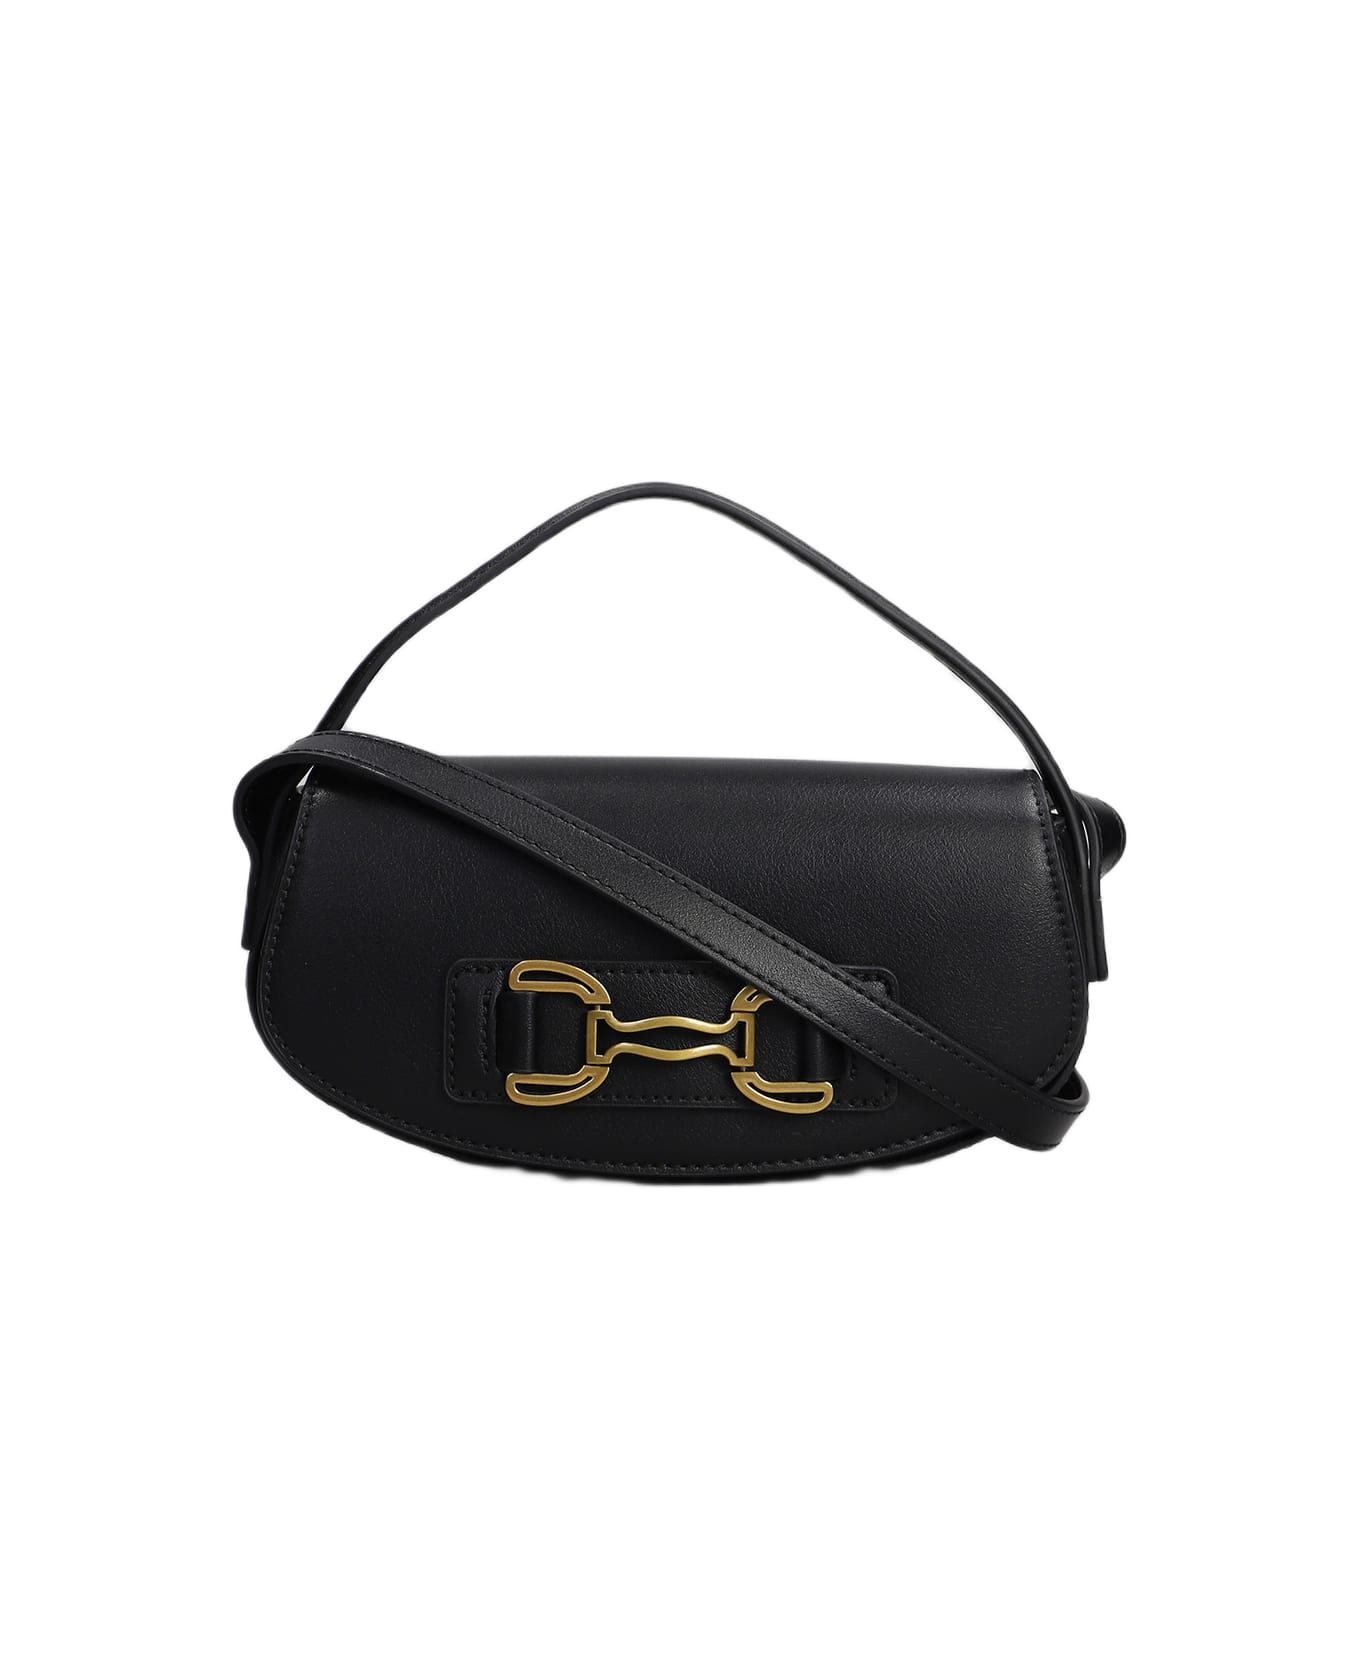 Bibi Lou Shoulder Bag In Black Leather - black